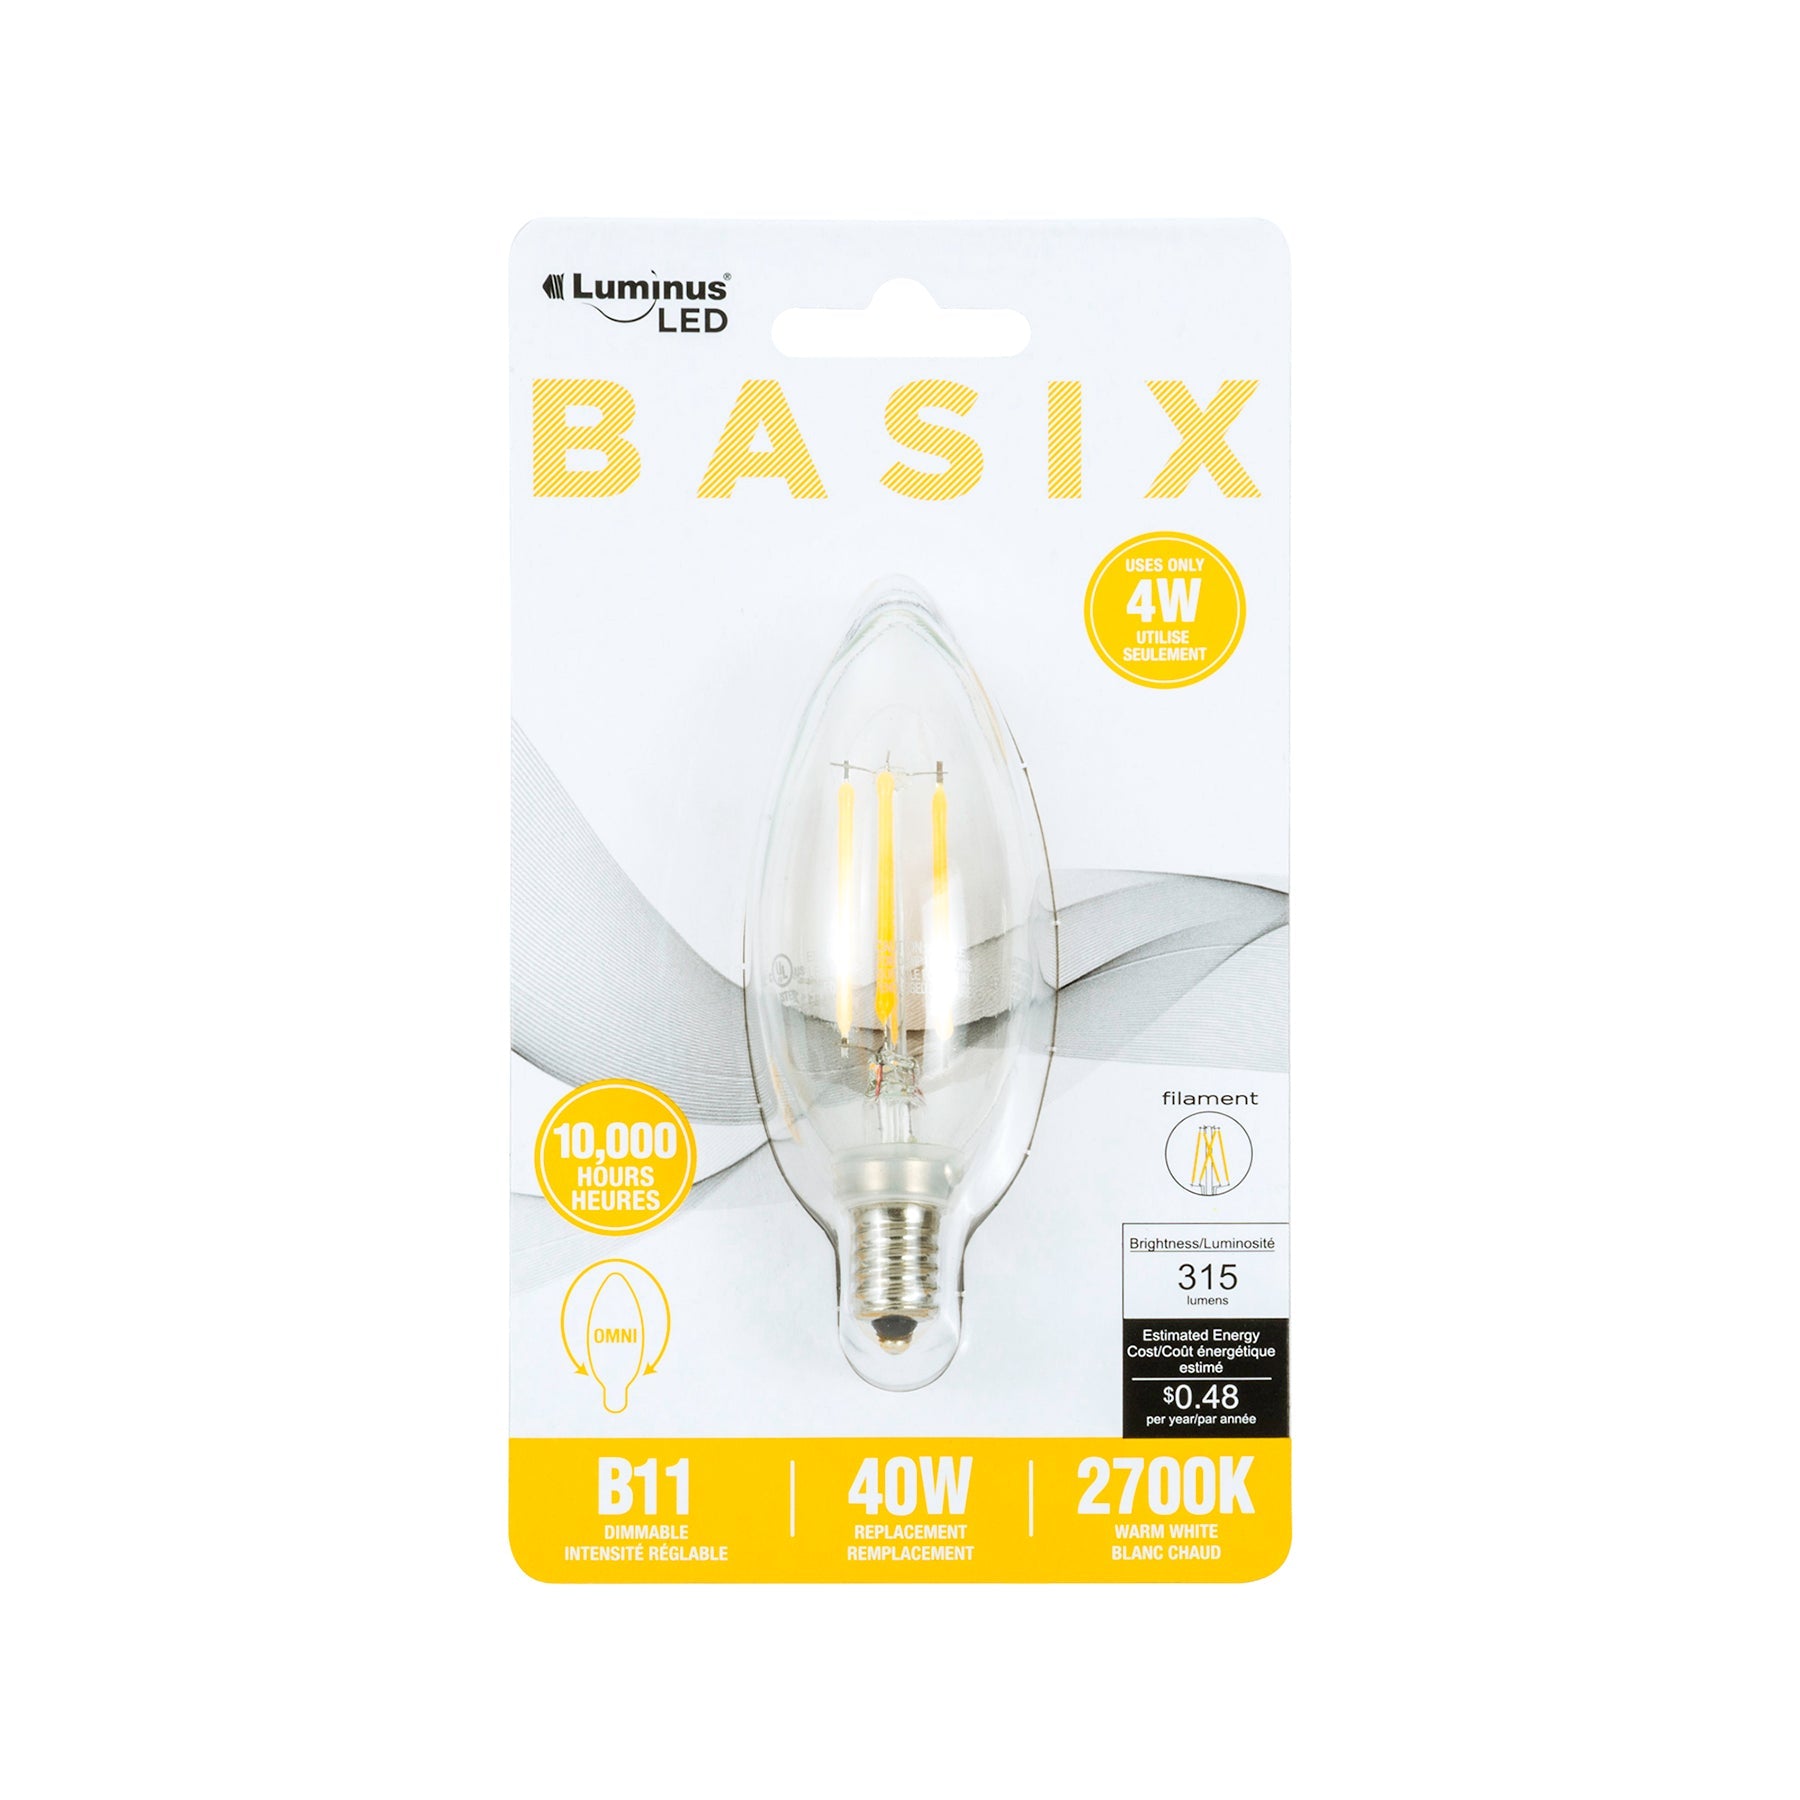 Luminus Led Basix Filament Light Bulb Warm White Base E12 B10 2700K 1.38x3.8in